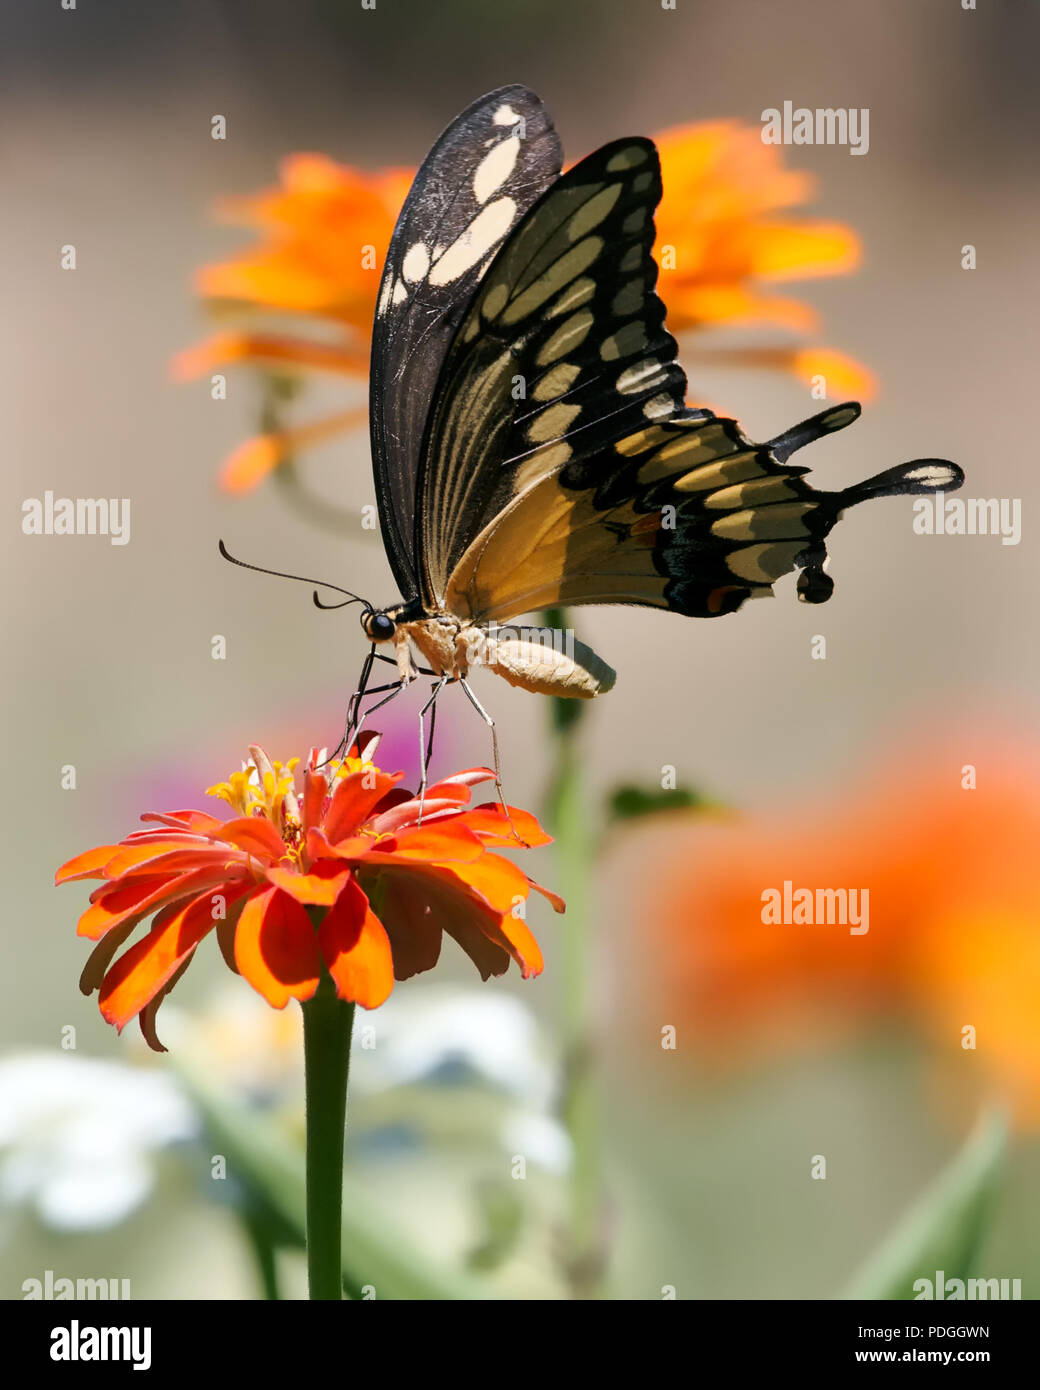 Giant Swaloowtail Butterfly Feeding with Orange Zinnia Stock Photo